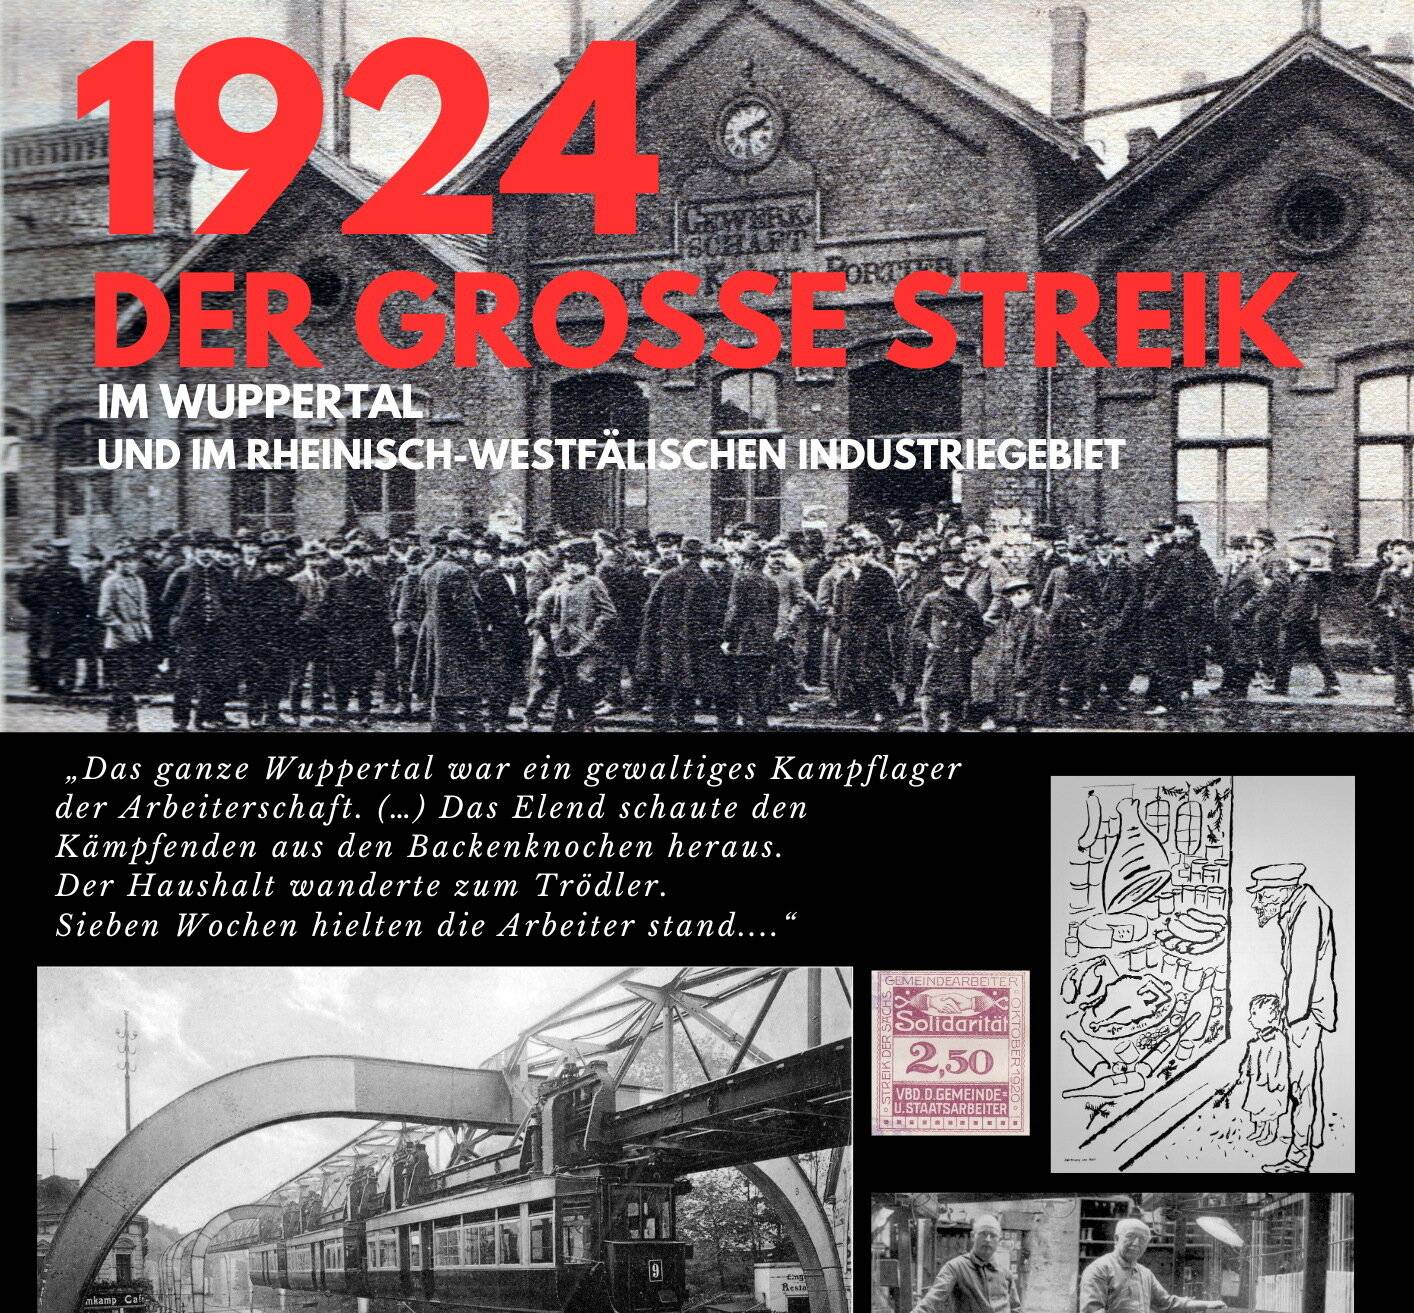 Die Ausstellung „1924 - der große